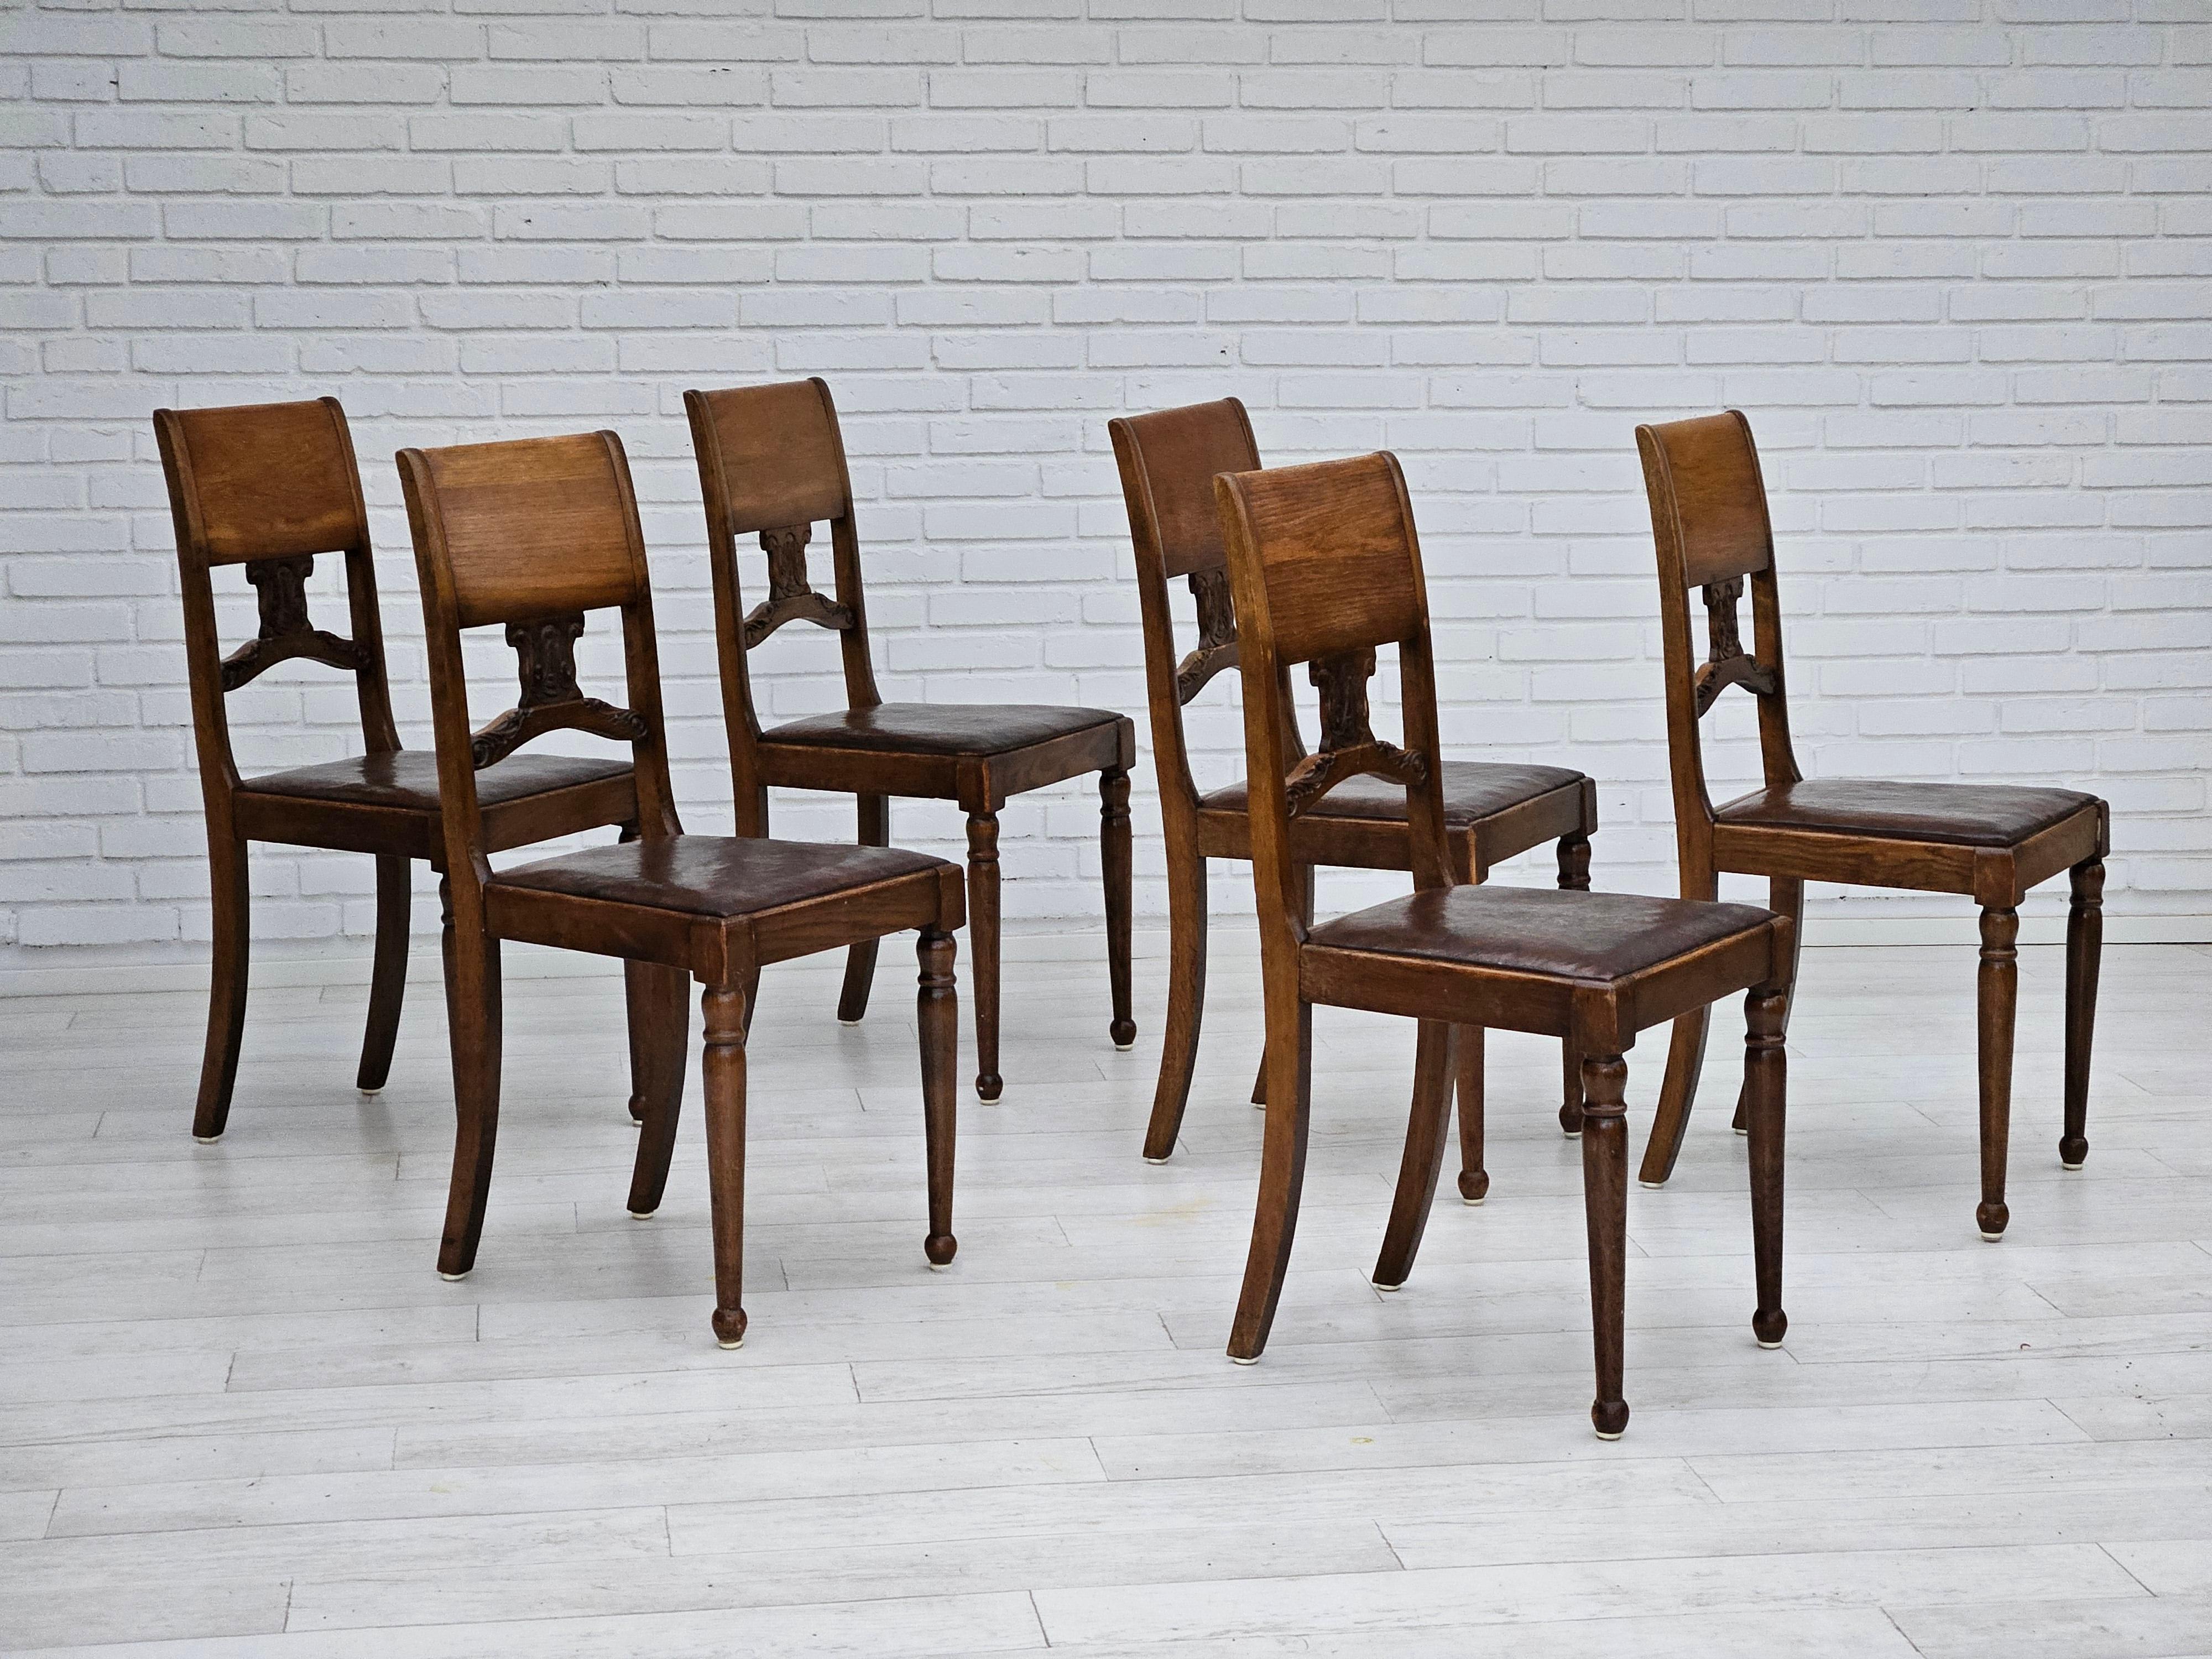 Années 1930, ensemble de 6 chaises en bon état d'origine : pas d'odeurs ni de taches. Cuir et bois de chêne. Patine originale du cuir et du bois. Fabriqué par un fabricant de meubles scandinaves vers 1930.